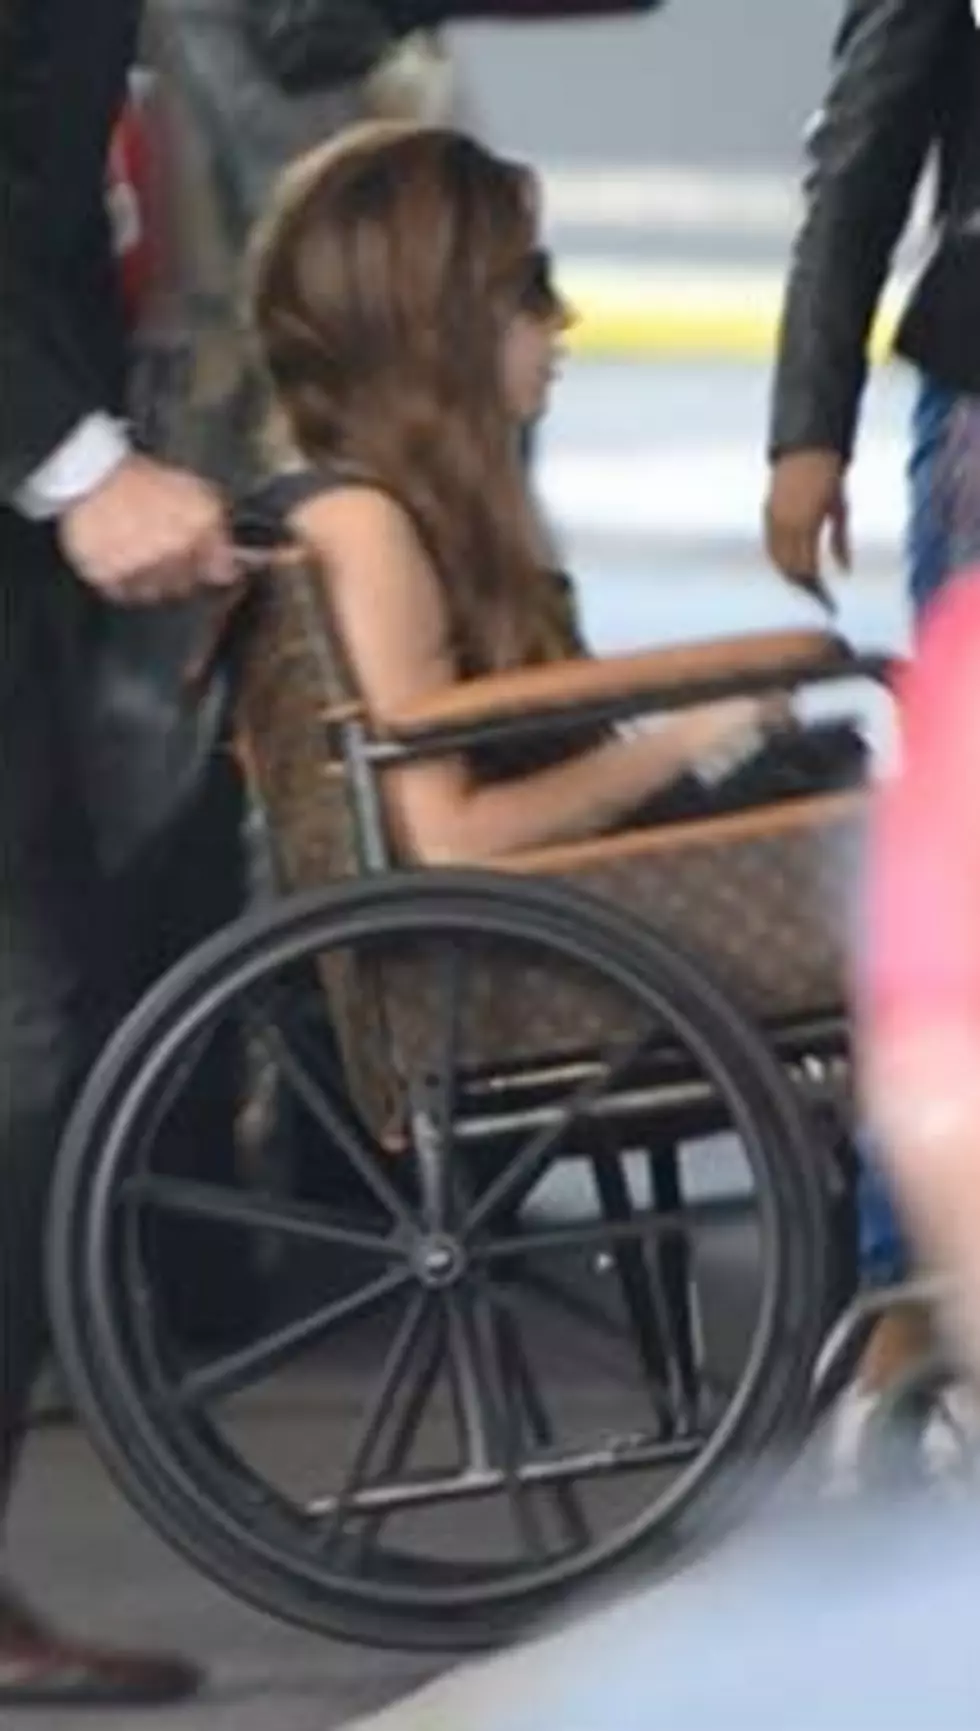 Lady Gaga’s Louis Vuitton Wheelchair